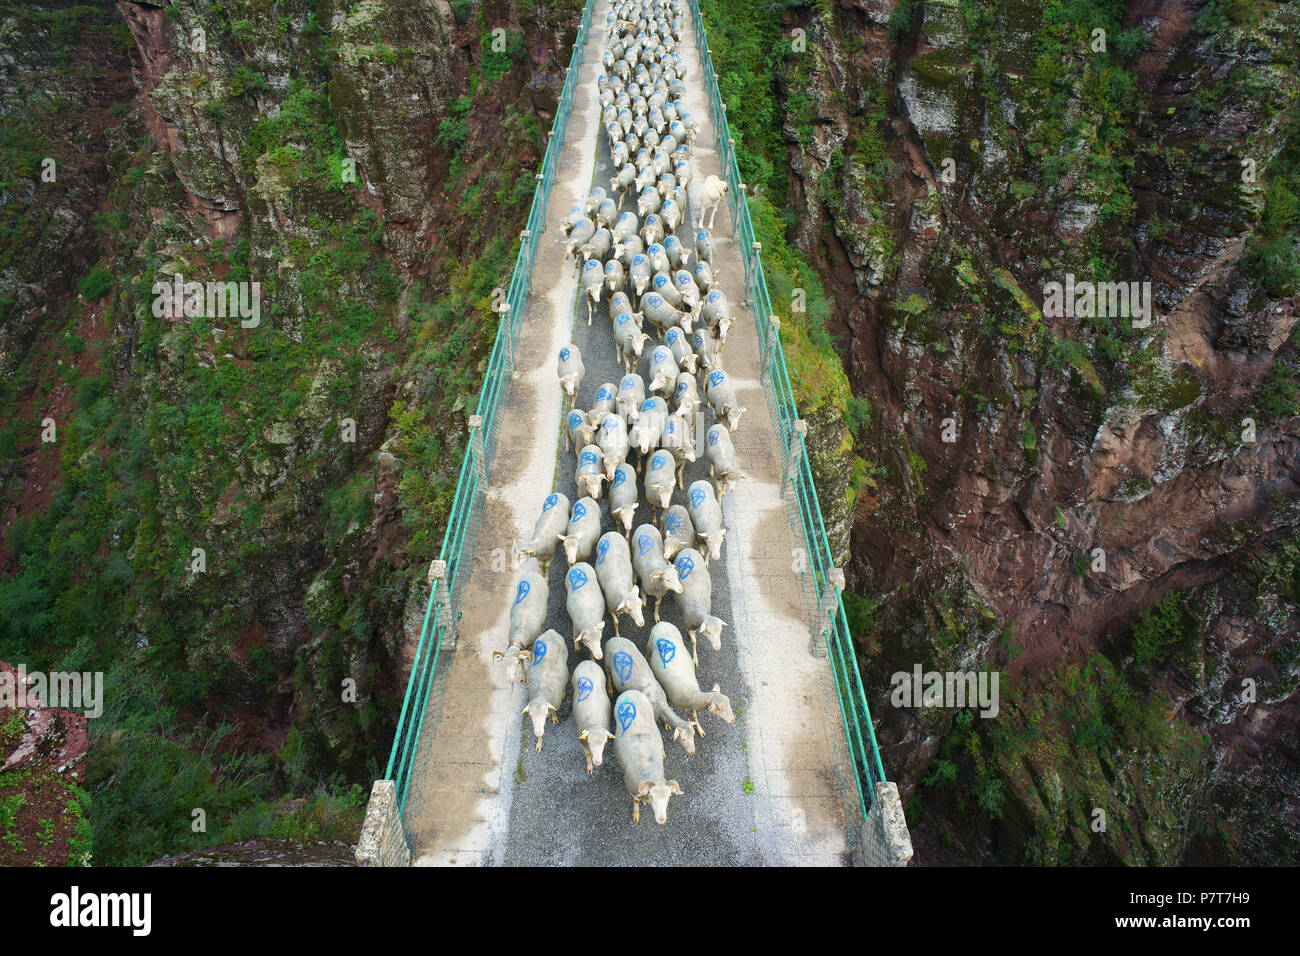 VUE AÉRIENNE depuis un mât de 6 mètres. Transhumance sur un pont, à 80 mètres au-dessus du fond du canyon. Gorges de Daluis, Guillaumes, Alpes-Maritimes, France. Banque D'Images